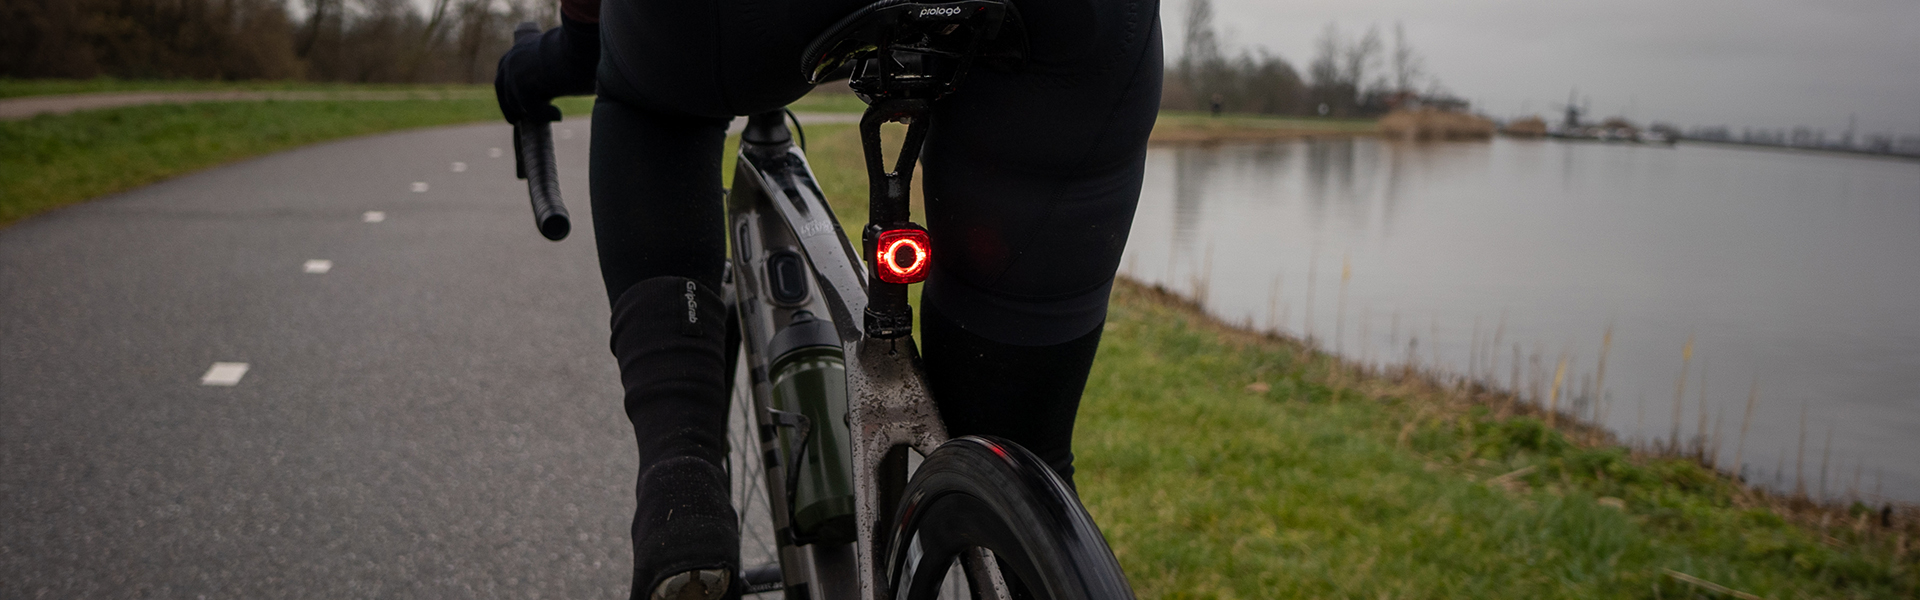 Sate-lite USB rechargeable bike light  eletric bike rear  light  waterproof